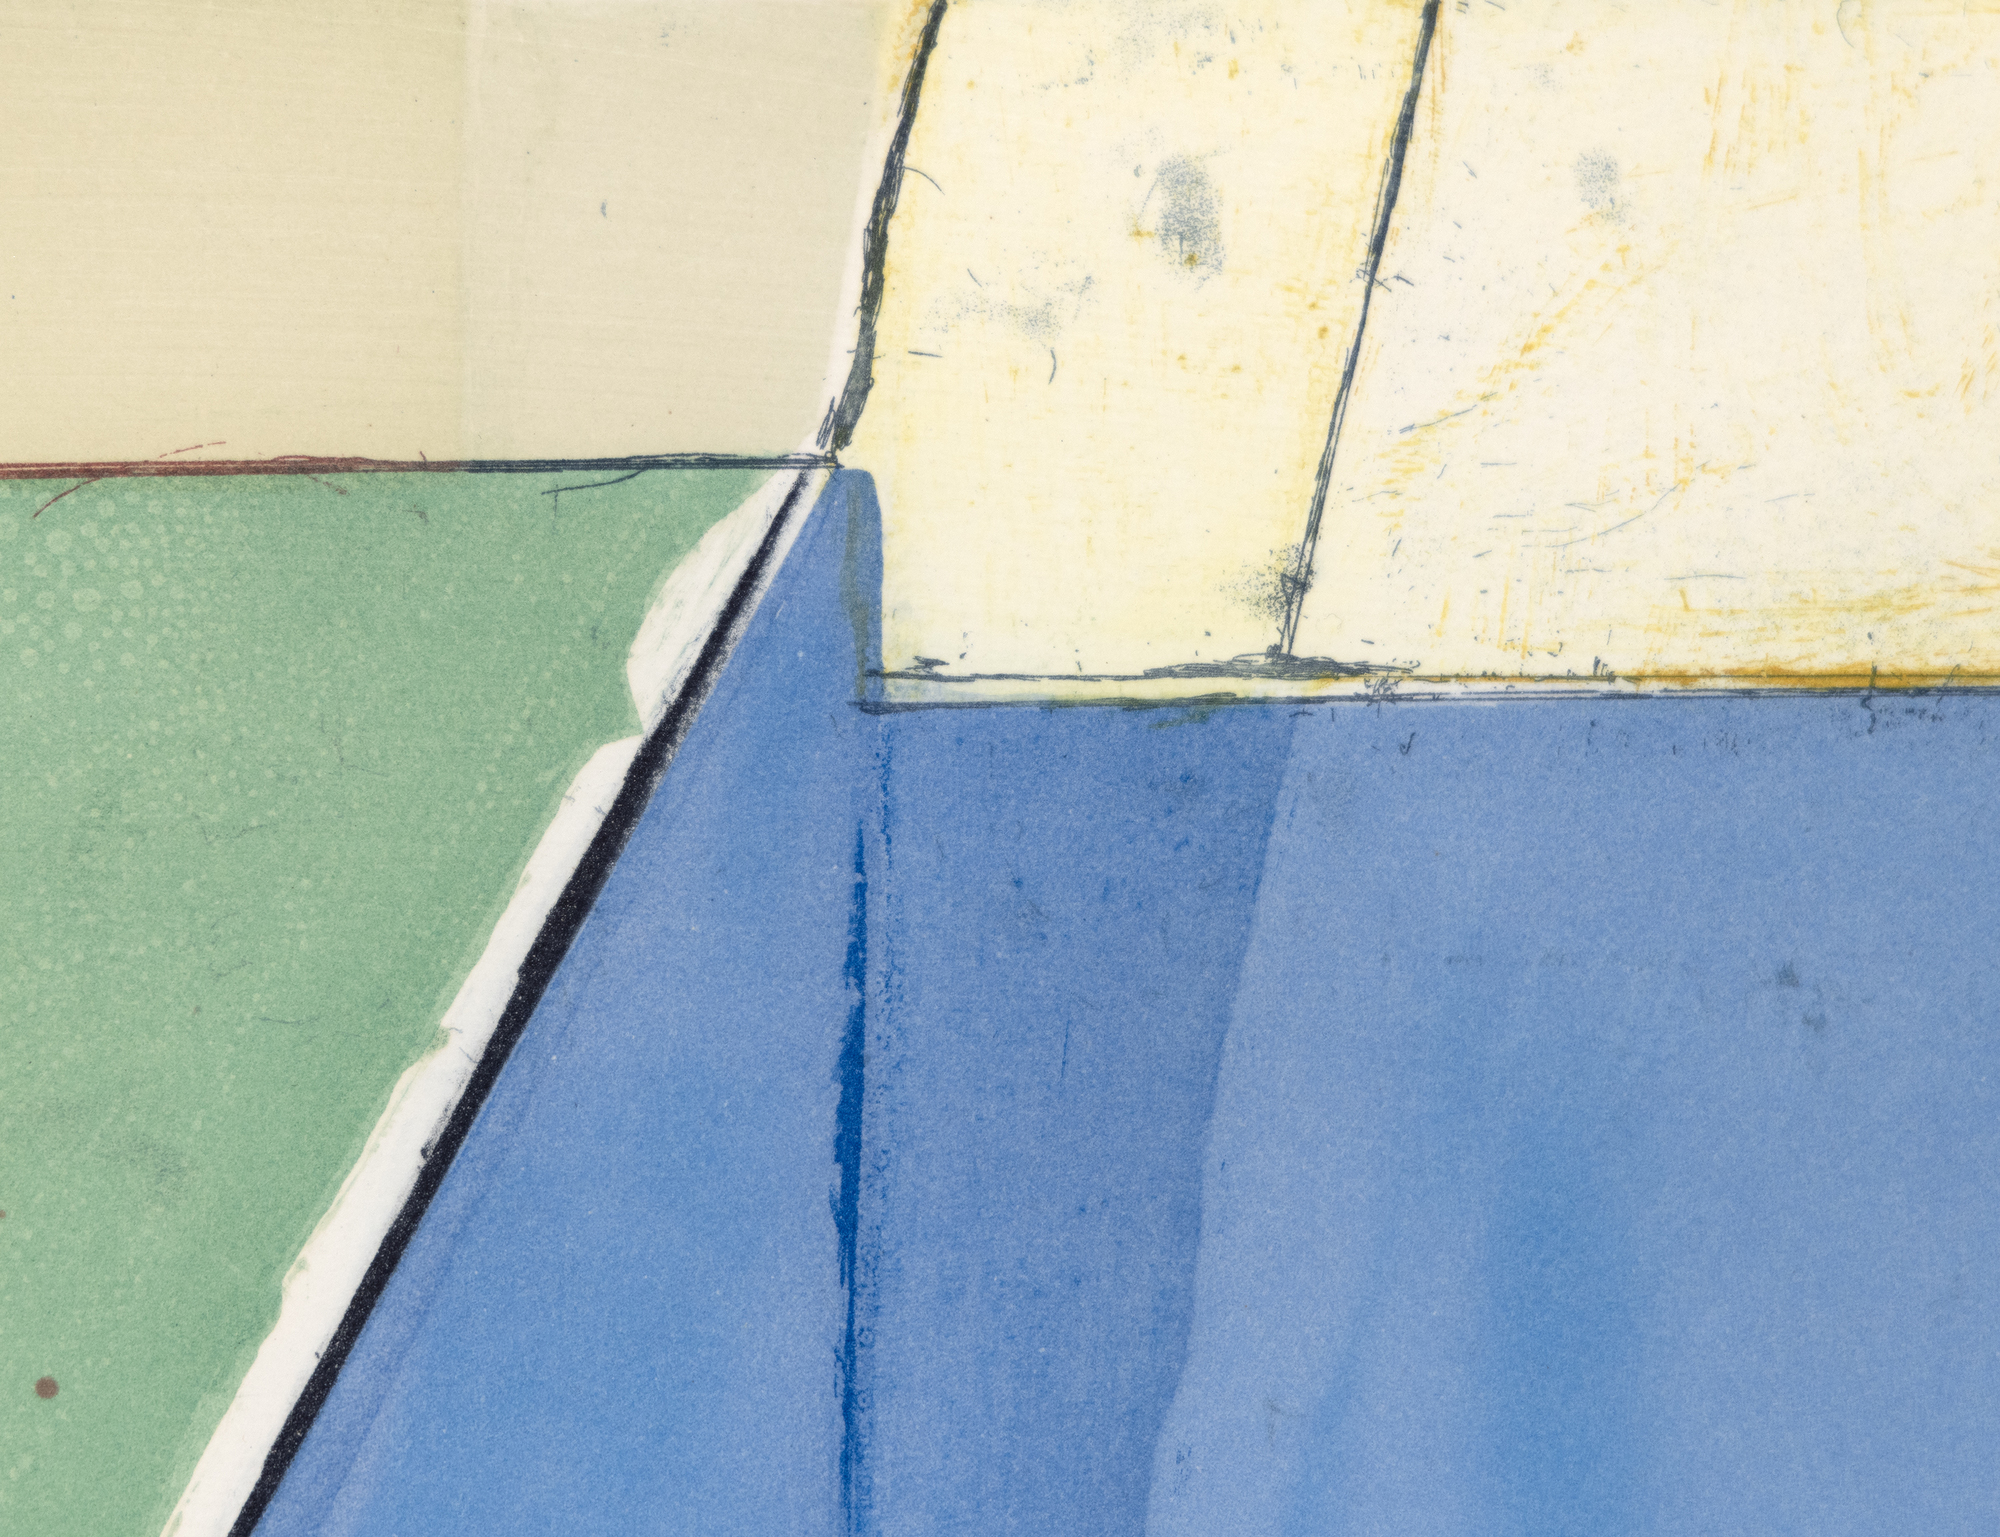 Diebenkorns Ocean Park-Serie erinnert an die delikate Balance von Licht und Farbe, die durchdachte Komposition und die subtile Integration von Landschaftselementen, die alle das Küstenambiente seines Ateliers in Santa Monica simulieren. Anfang der 1990er Jahre griff Diebenkorn die Themen und das ästhetische Empfinden der Ocean Park-Serie wieder auf, indem er verschiedene Drucktechniken einsetzte, um seine Erkundung der abstrakten Sprache, die er in seinen Gemälden entwickelt hatte, zu erweitern. &quot;High Green, Version I&quot; ist ein Beispiel für dieses Streben. Es zeigt die kompositorischen Strategien, die Farbpalette und die räumlichen Aspekte, die für die Ocean Park-Serie charakteristisch sind, und demonstriert gleichzeitig die einzigartigen Möglichkeiten der Druckgrafik, diese Elemente neu zu interpretieren.